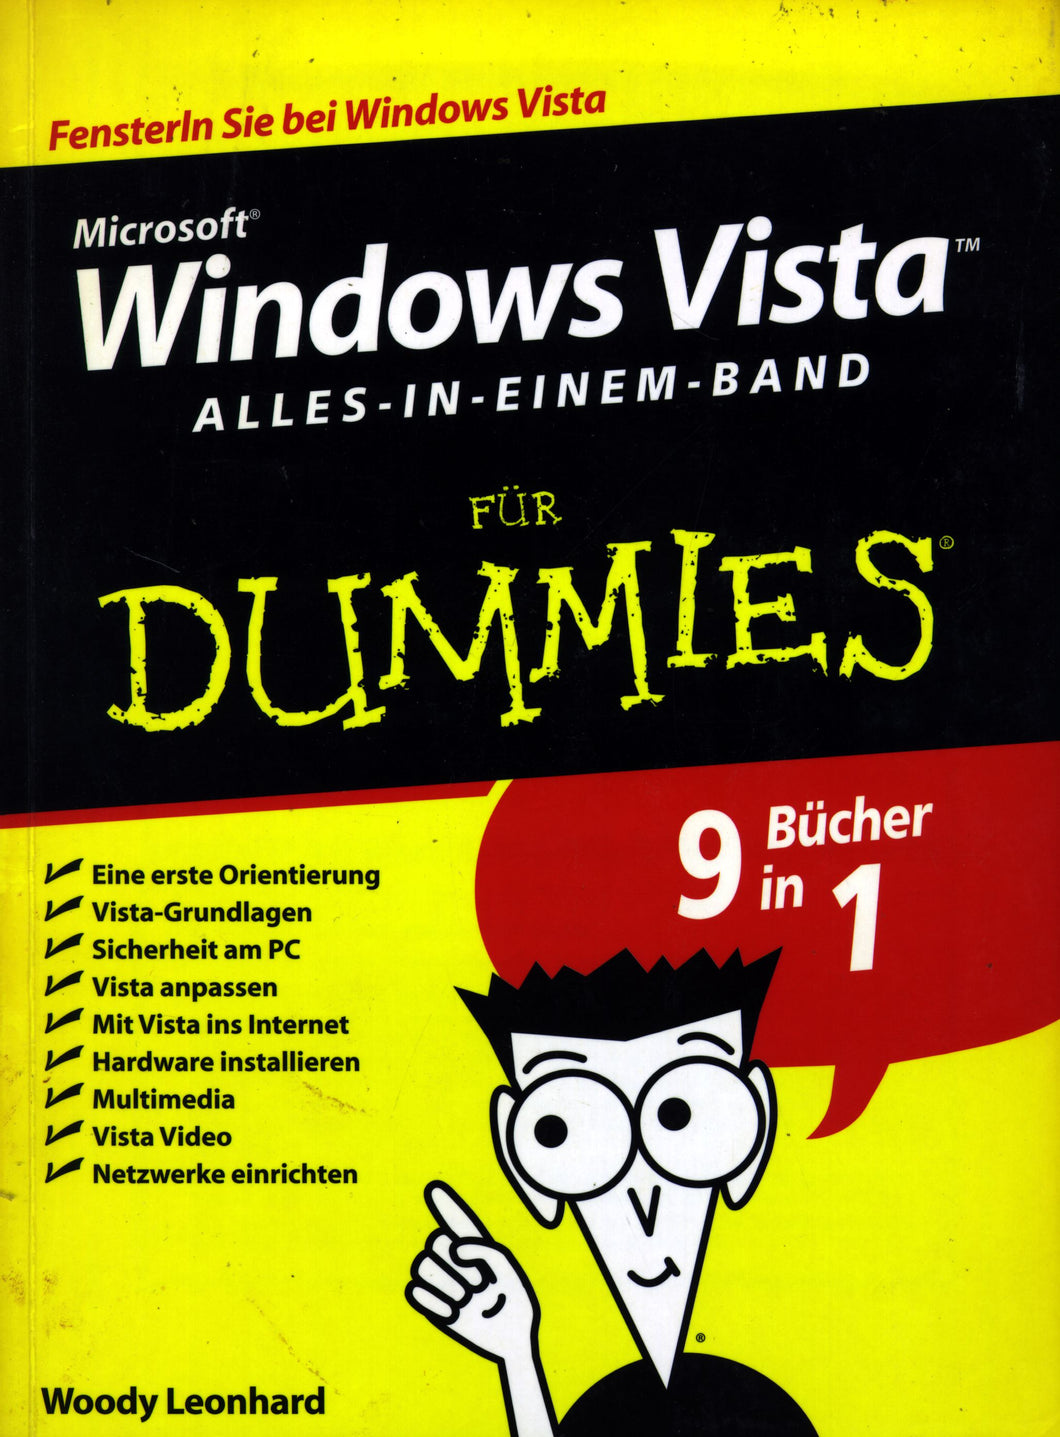 Windows Vista für Dummies